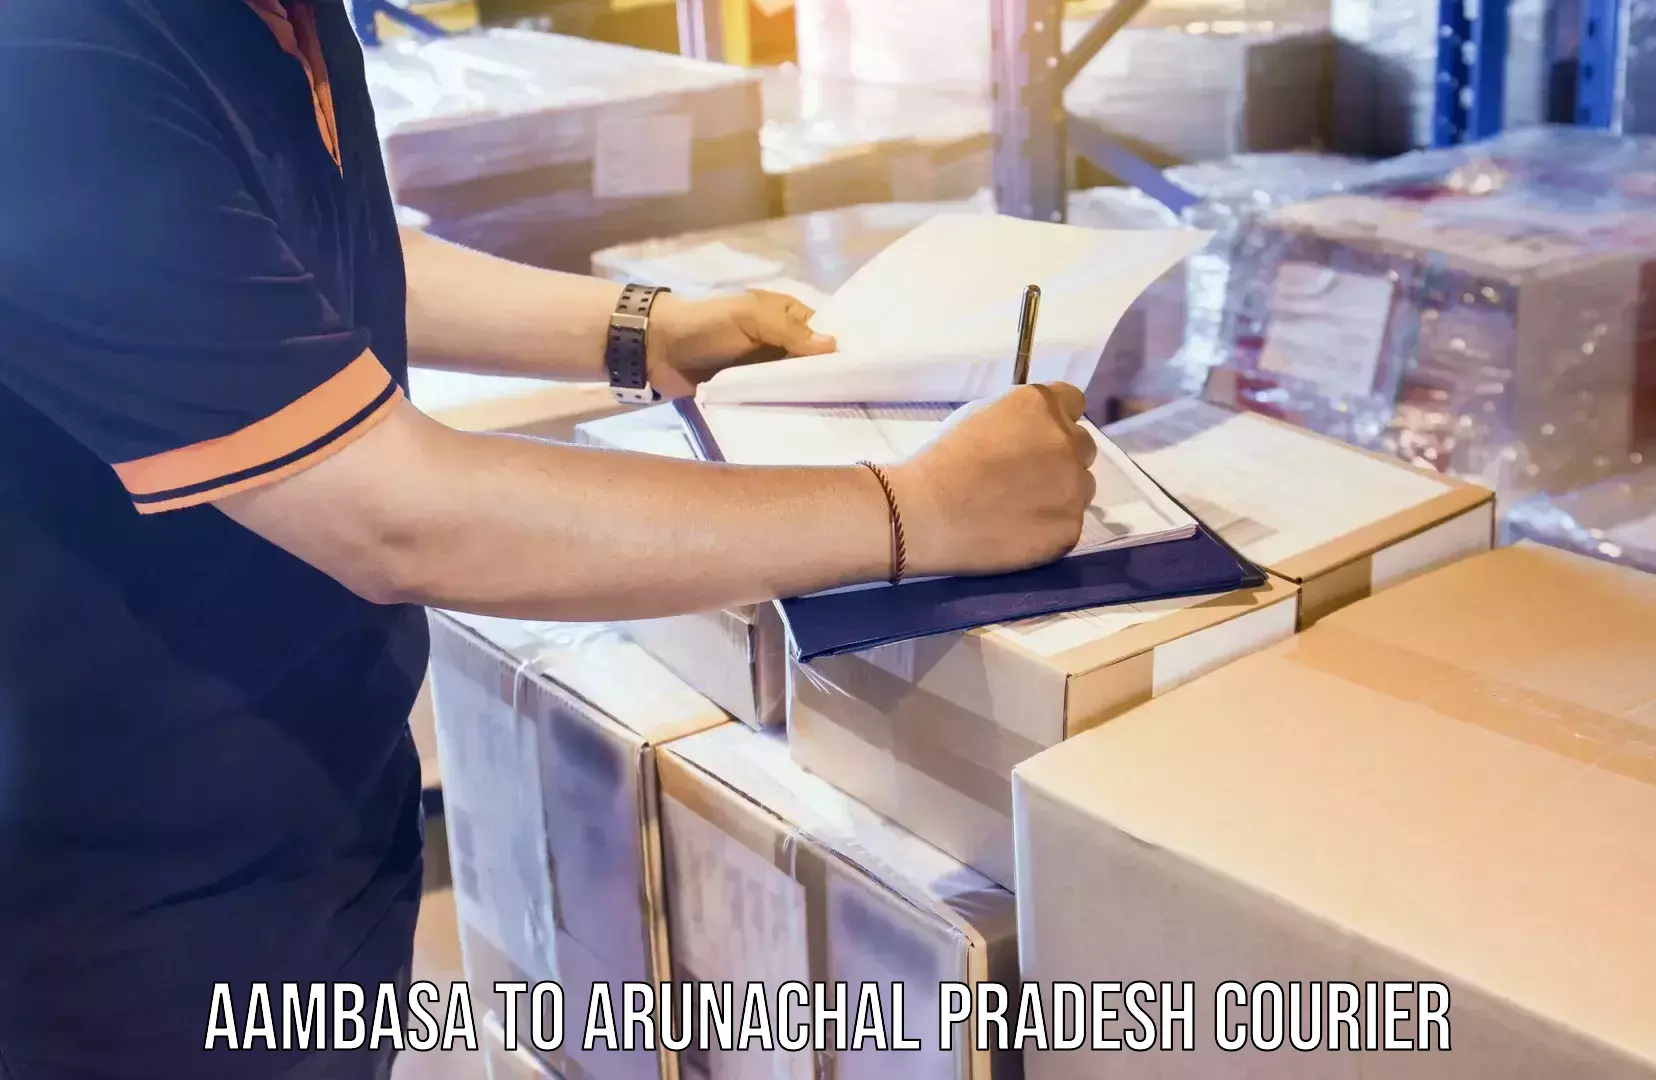 Express package handling Aambasa to Arunachal Pradesh